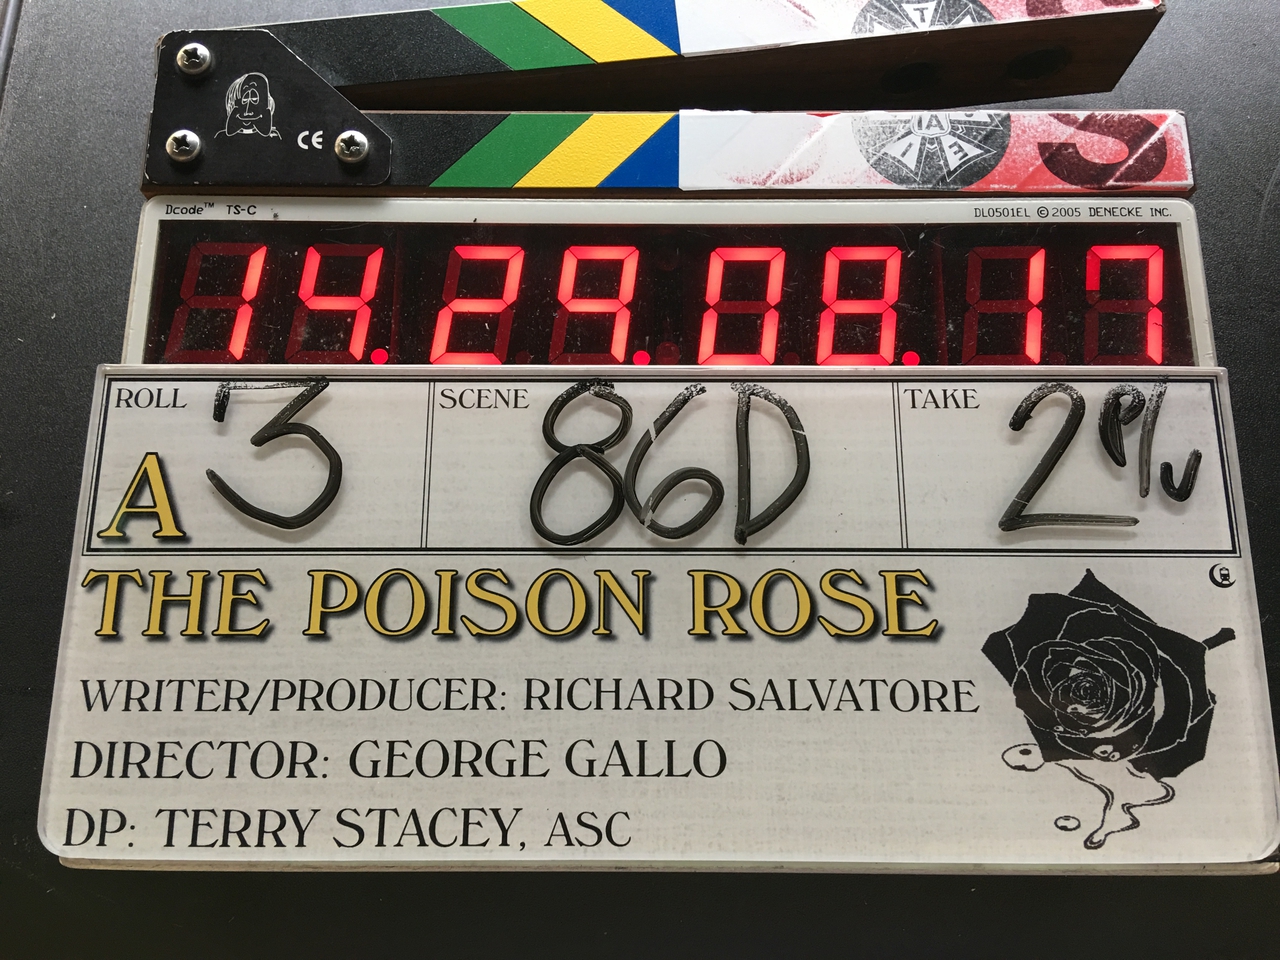  فیلم سینمایی The Poison Rose با حضور George Gallo و Richard Salvatore